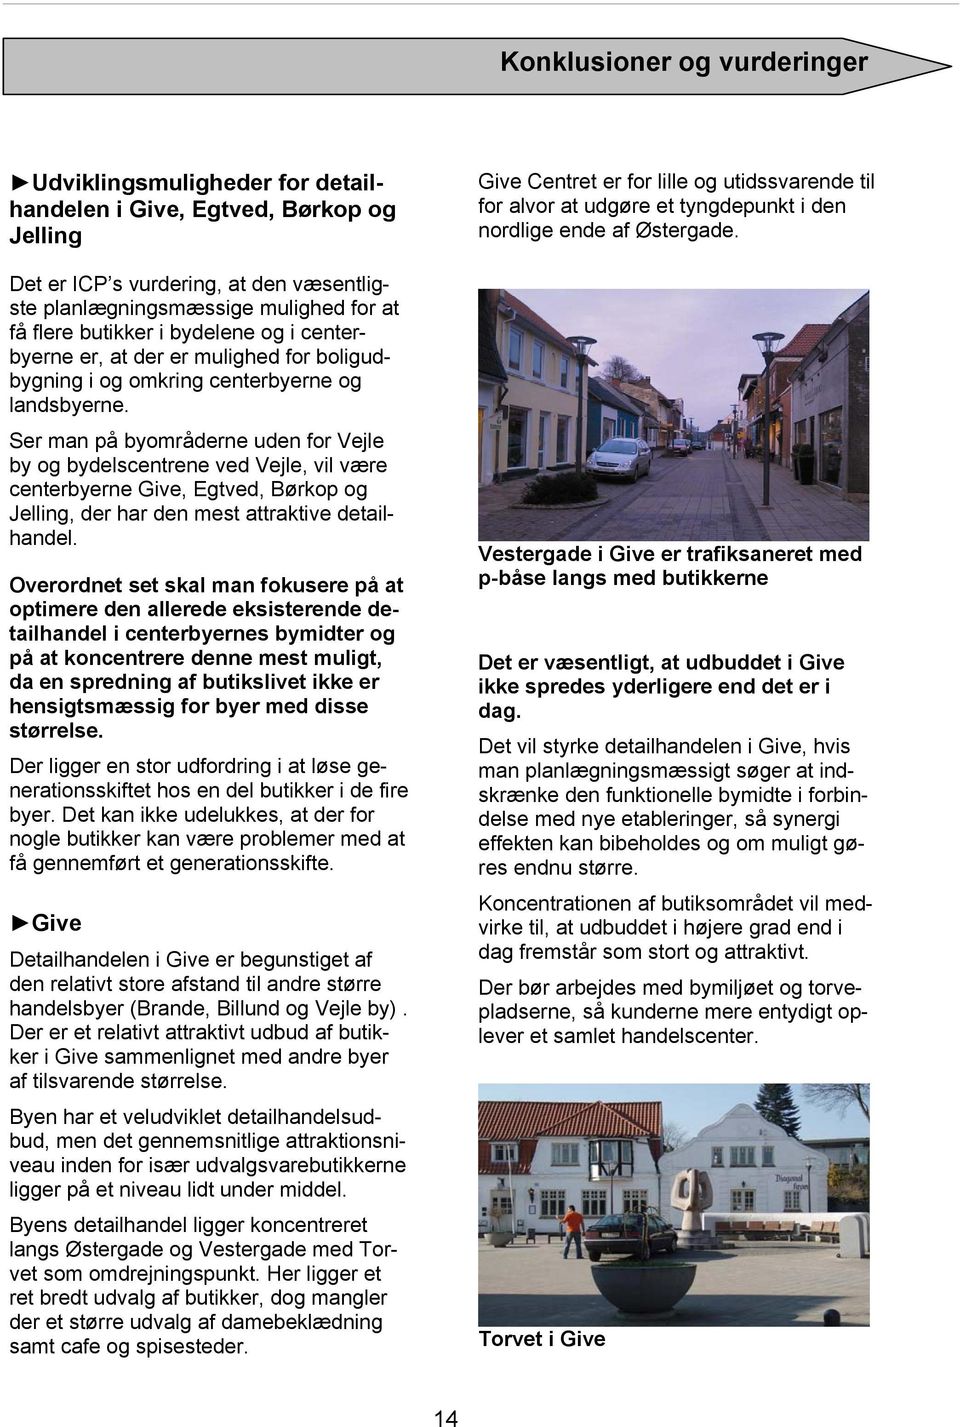 Ser man på byområderne uden for Vejle by og bydelscentrene ved Vejle, vil være centerbyerne Give, Egtved, Børkop og Jelling, der har den mest attraktive detailhandel.